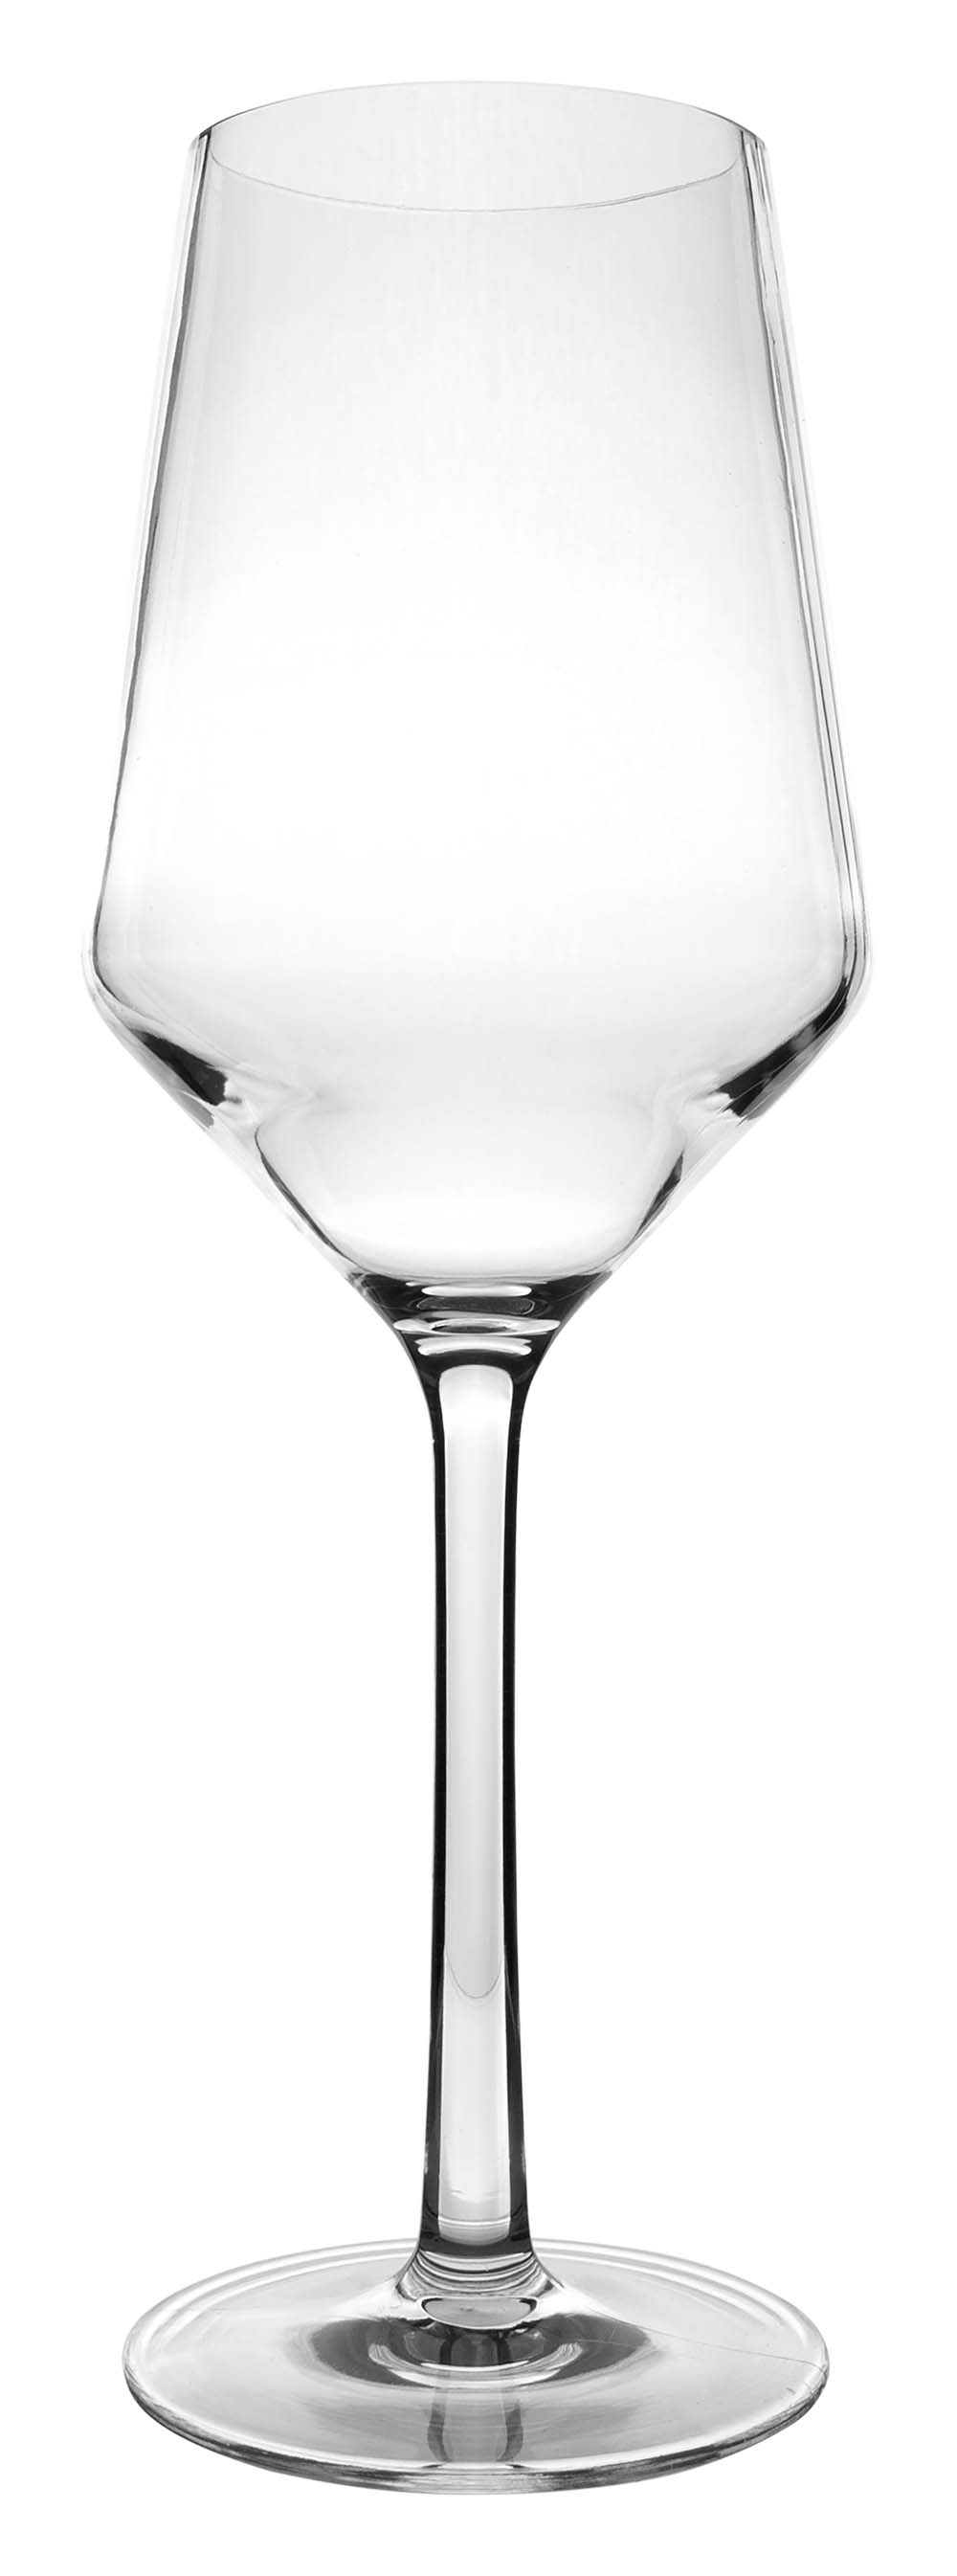 6101464 Een vrijwel onbreekbaar luxe witte wijnglas met een recht en stijlvol design. Vaatwasmachinebestendig, lichtgewicht en nog beter krasbestendig. Gemaakt van sterk tritan. Een set van 2 glazen. De glazen zijn BPA vrij.